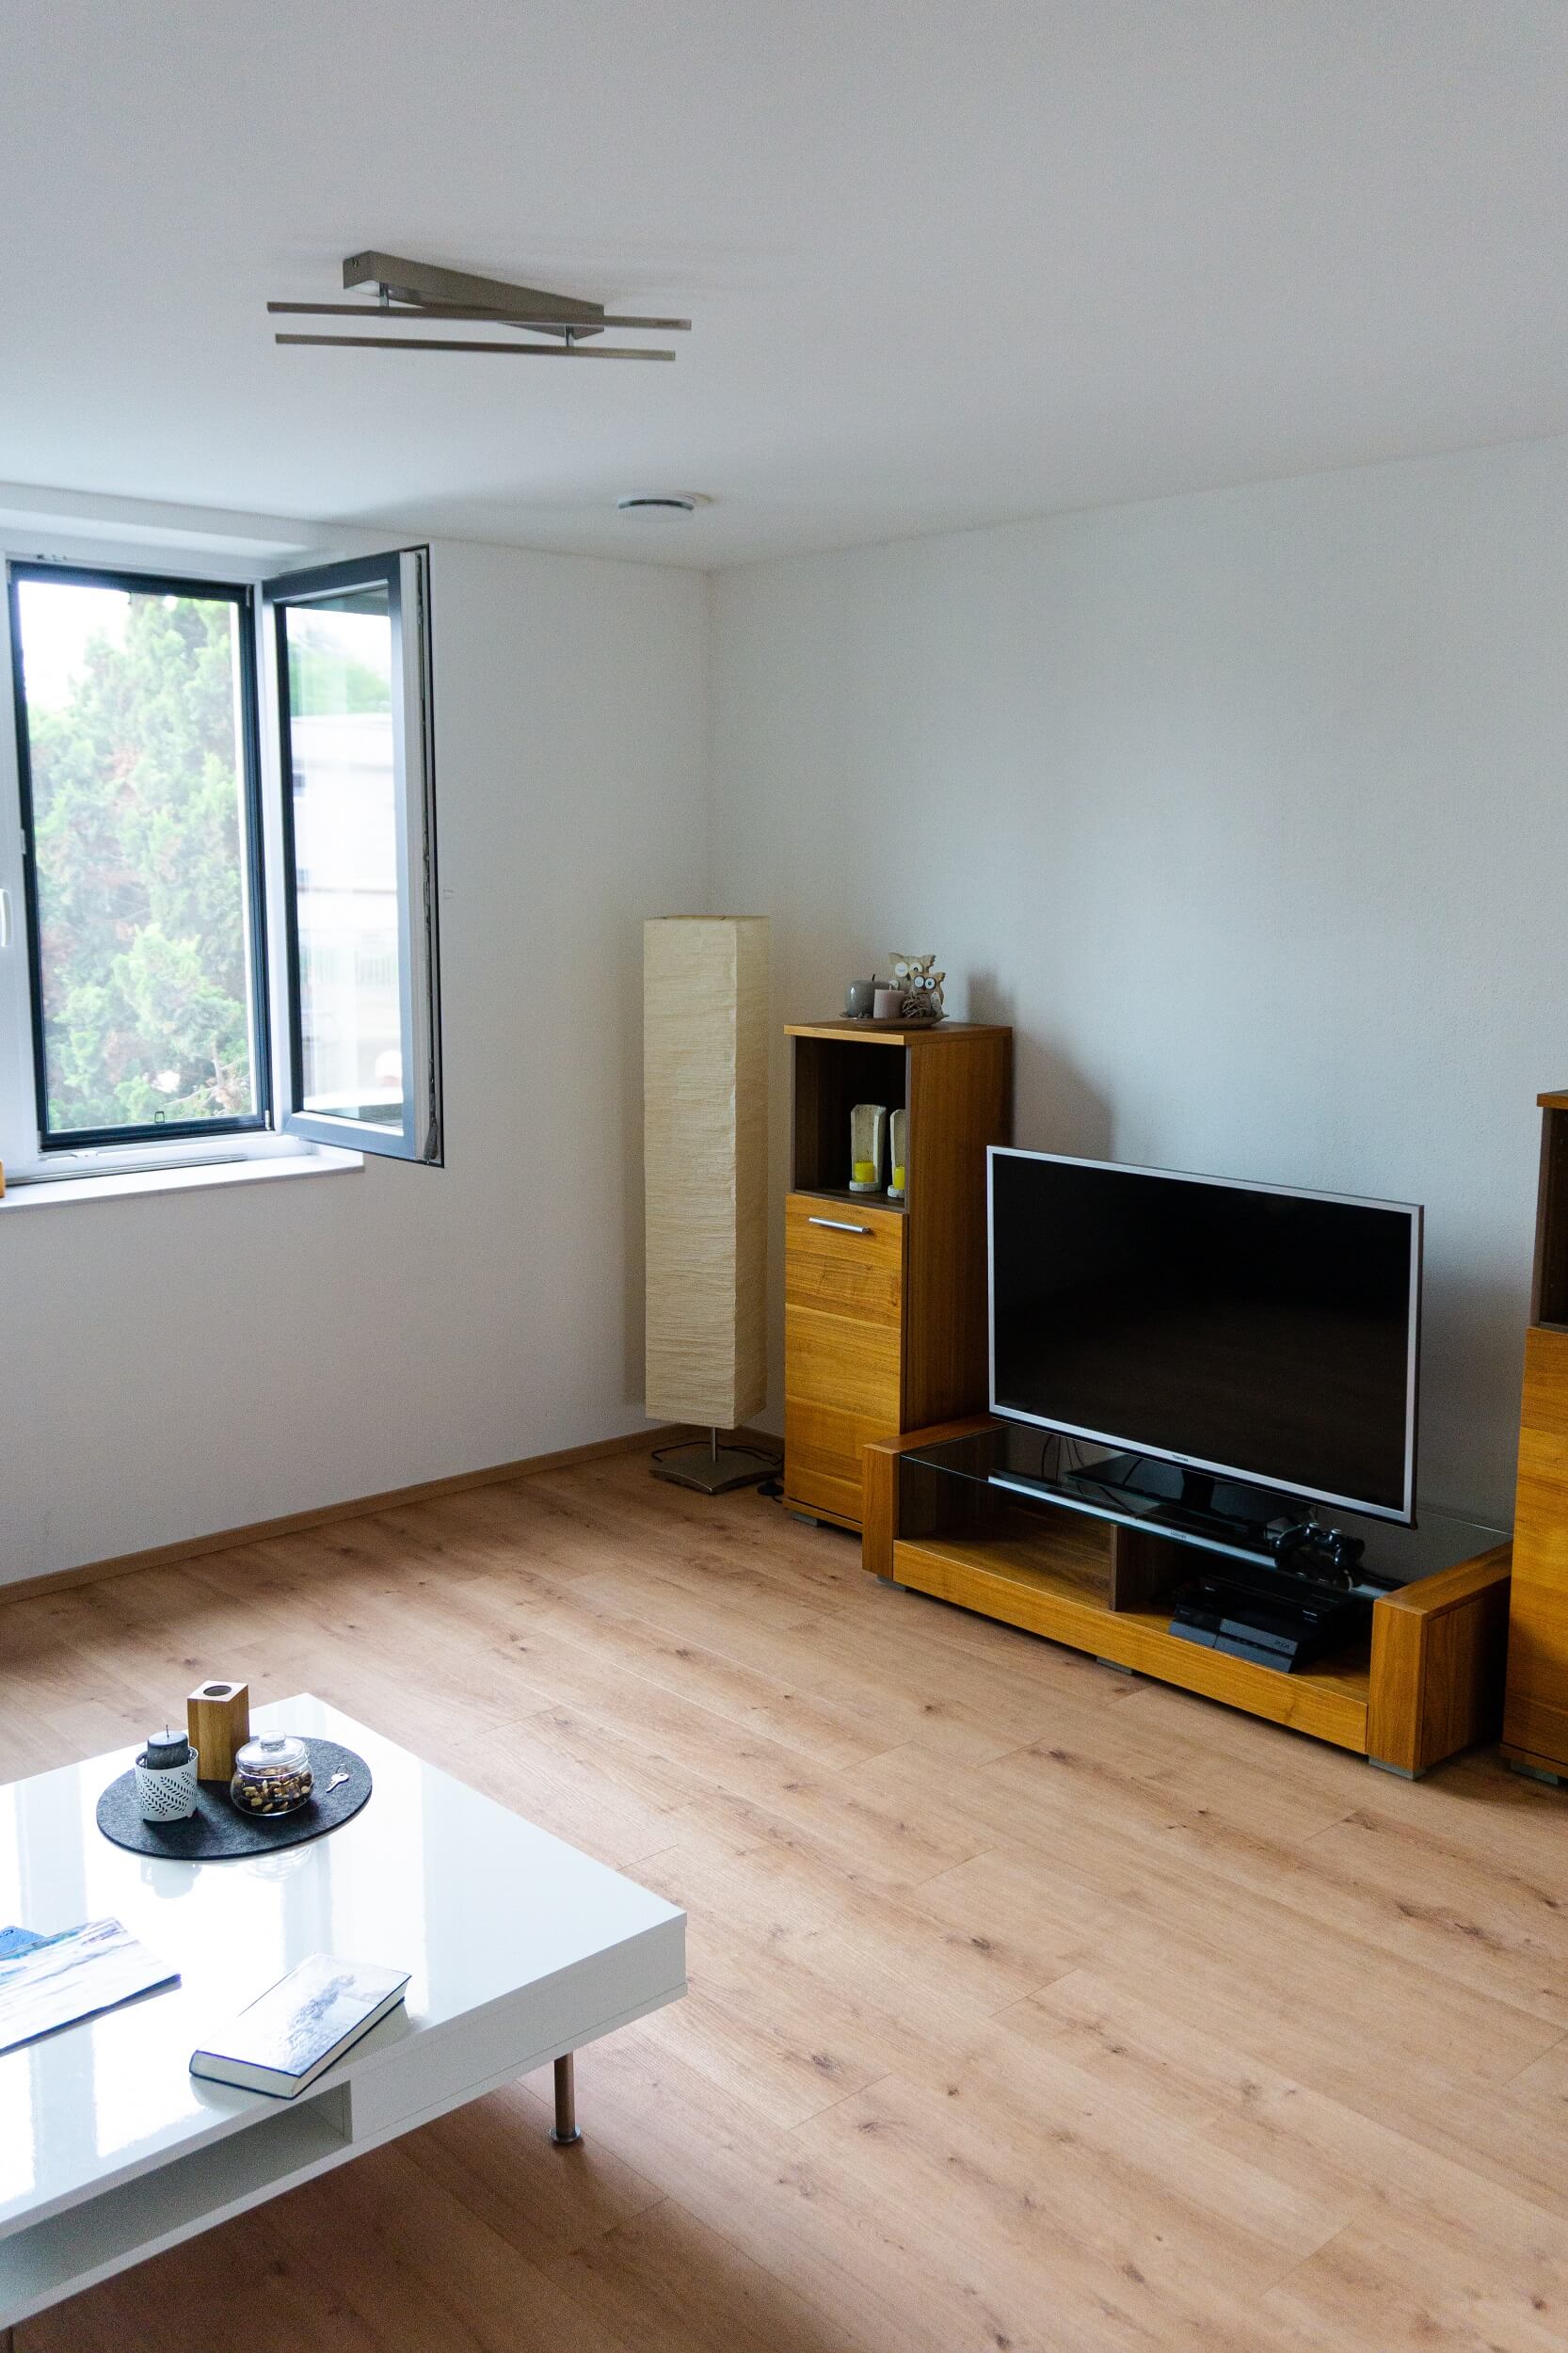 Ein luftig eingerichtetes Wohnzimmer mit kleiner Wohnwand und Fernseher bei offenem Fenster, wirkt durch den Venylboden in Naturholzoptik hochwertig.